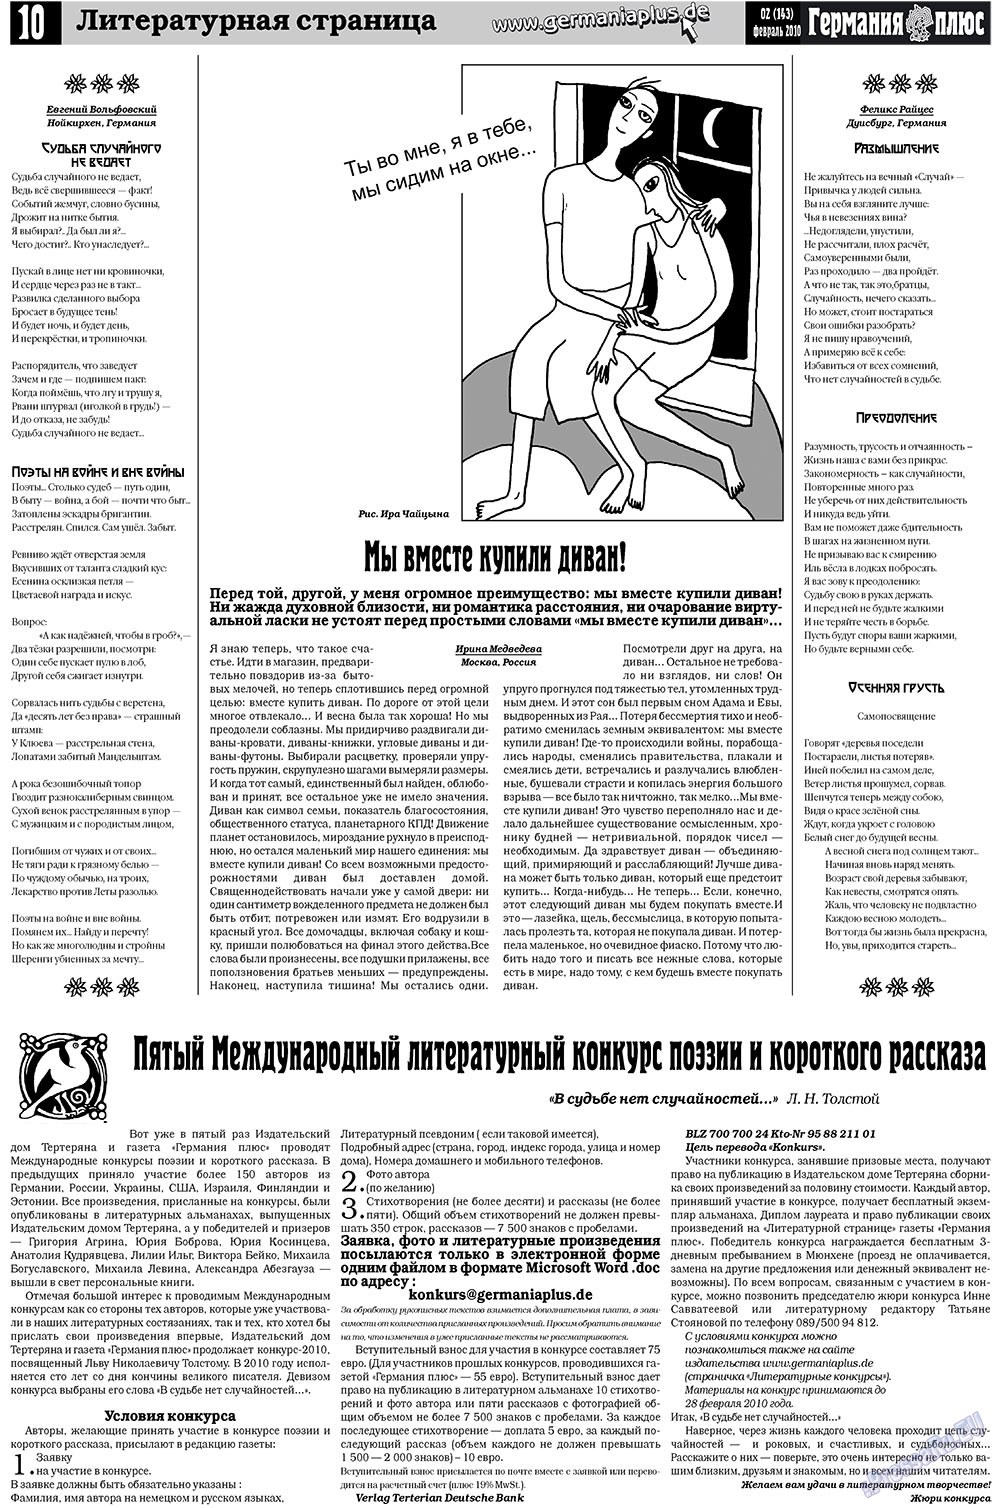 Германия плюс (газета). 2010 год, номер 2, стр. 10